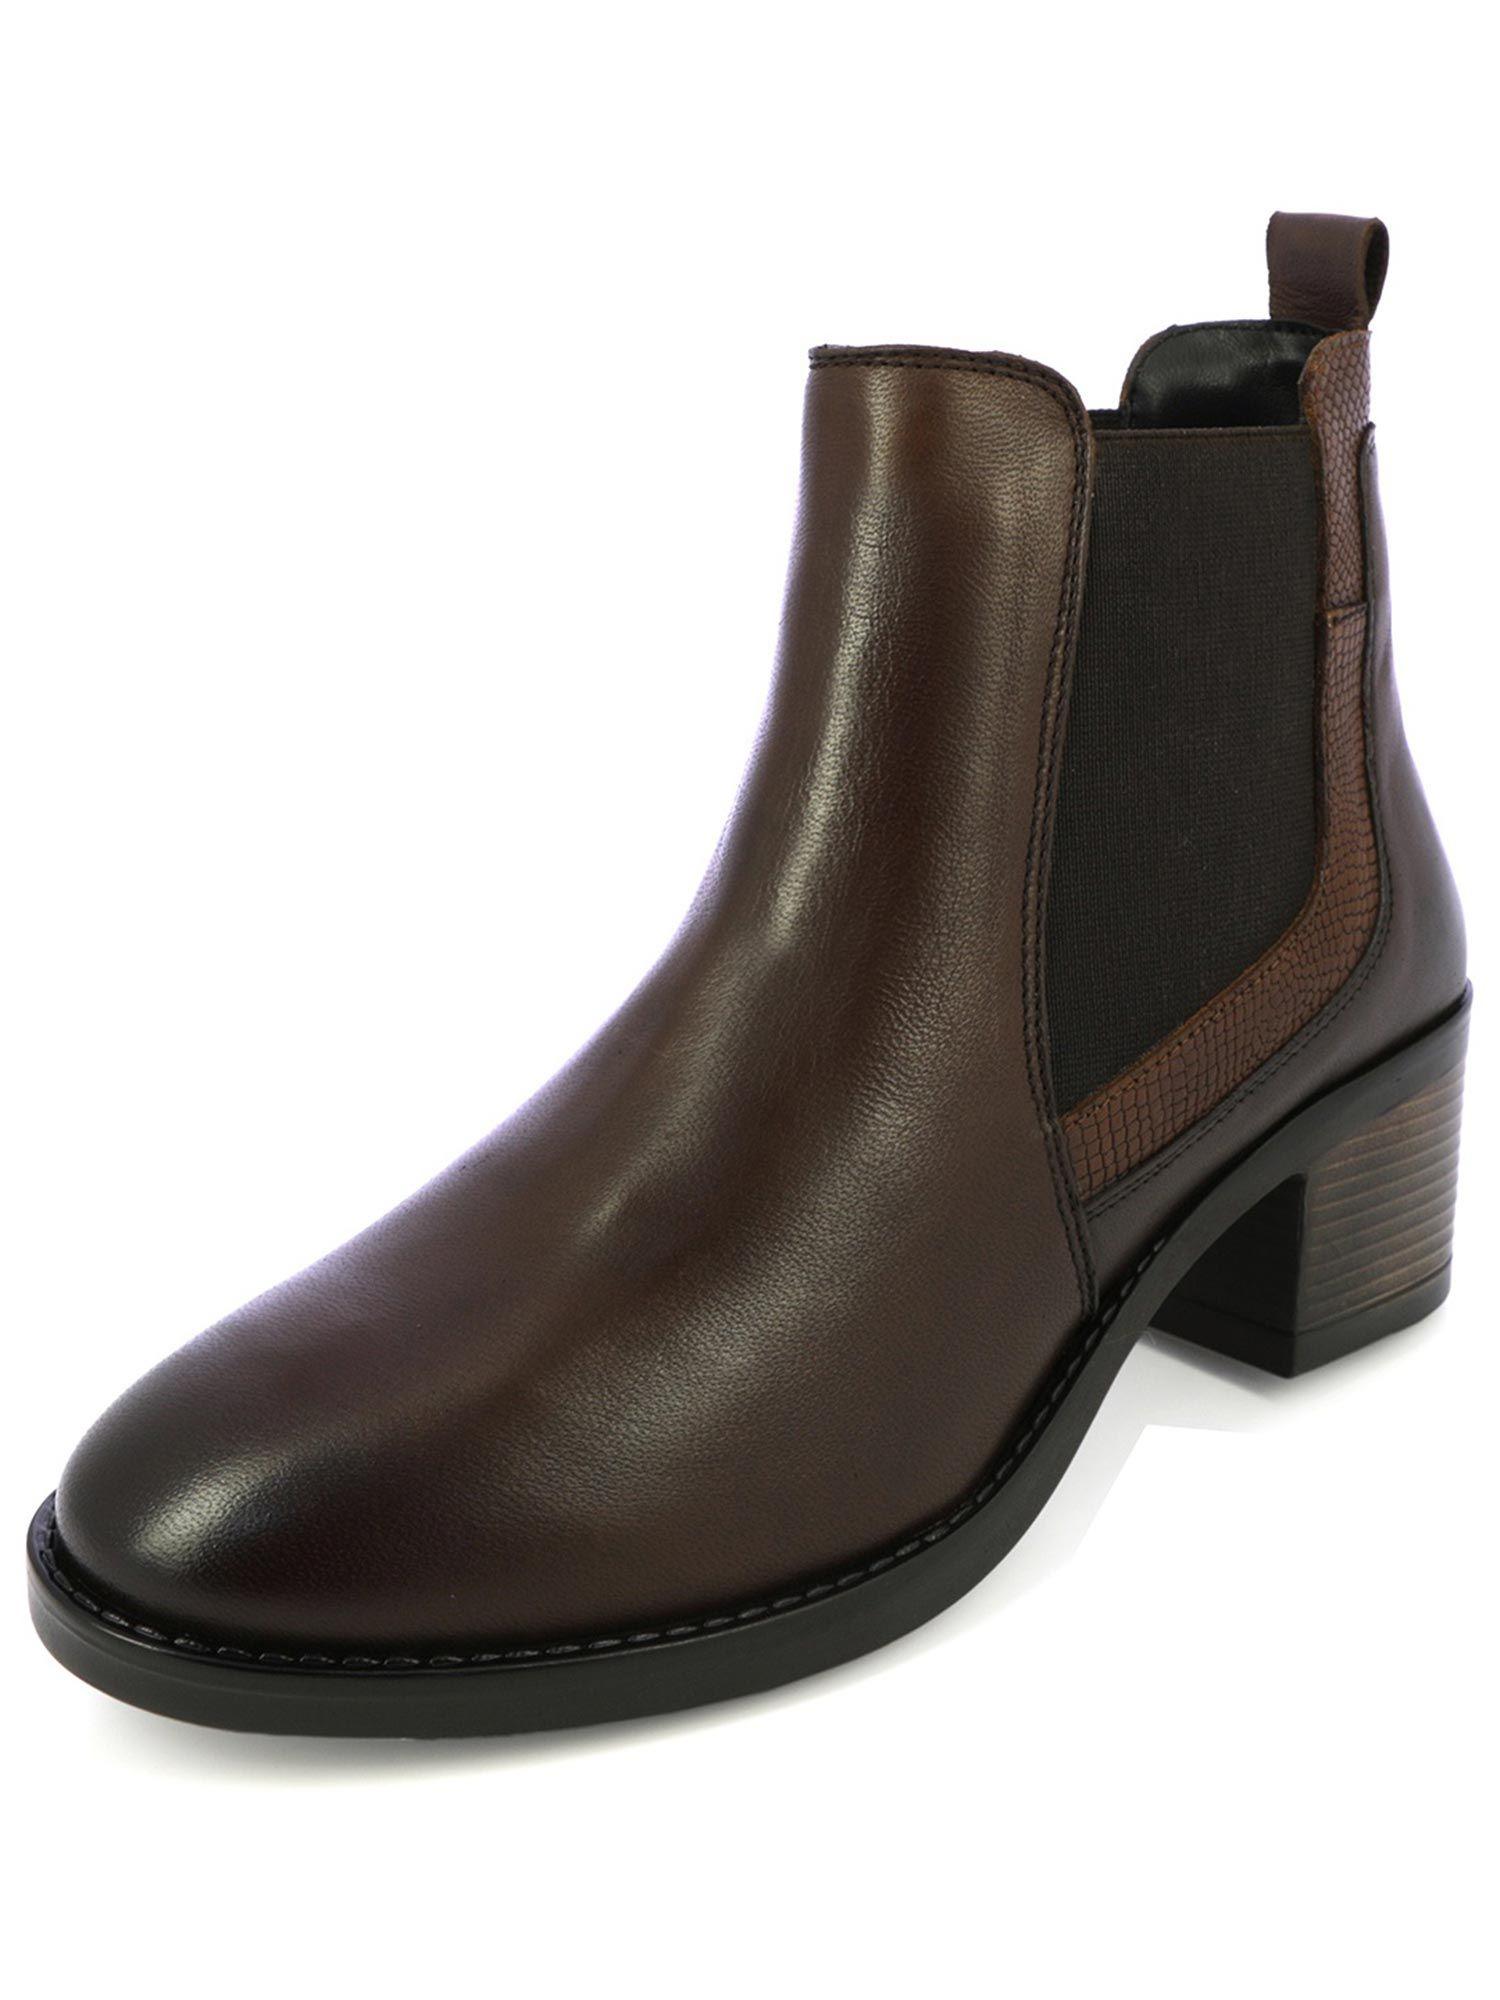 brown chelsea boots with block heels